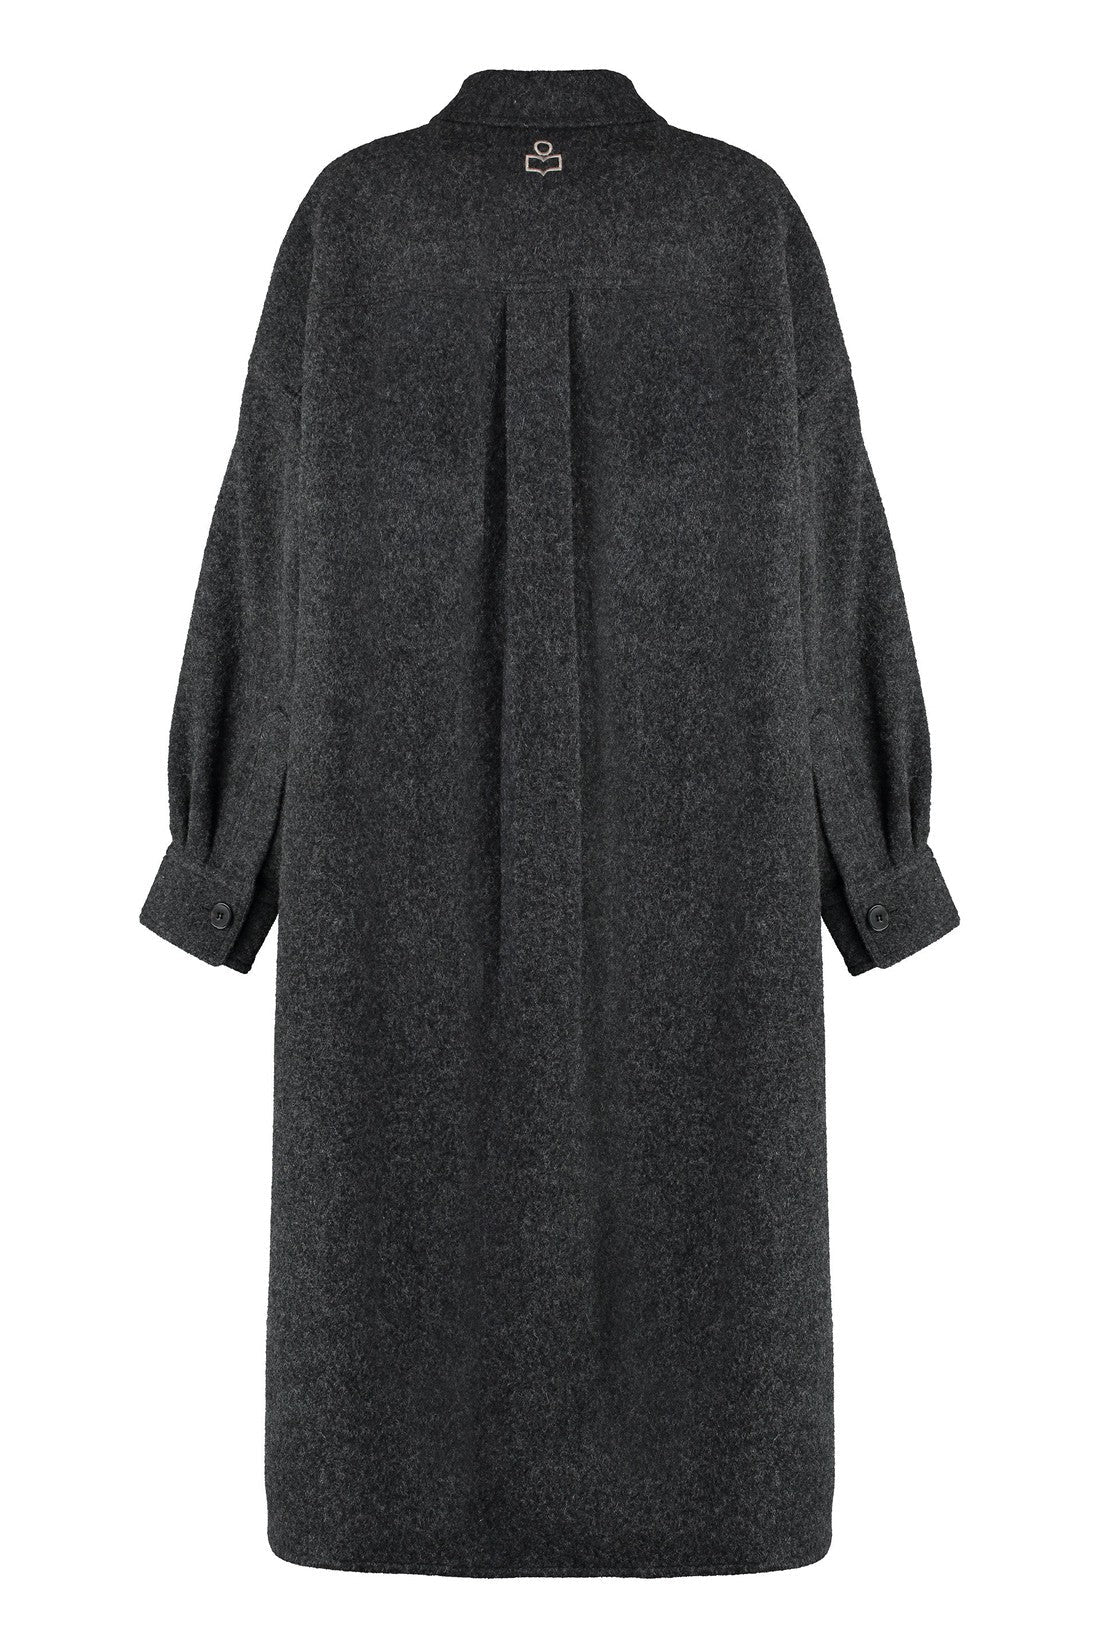 Isabel Marant Étoile-OUTLET-SALE-Fontizi wool blend coat-ARCHIVIST